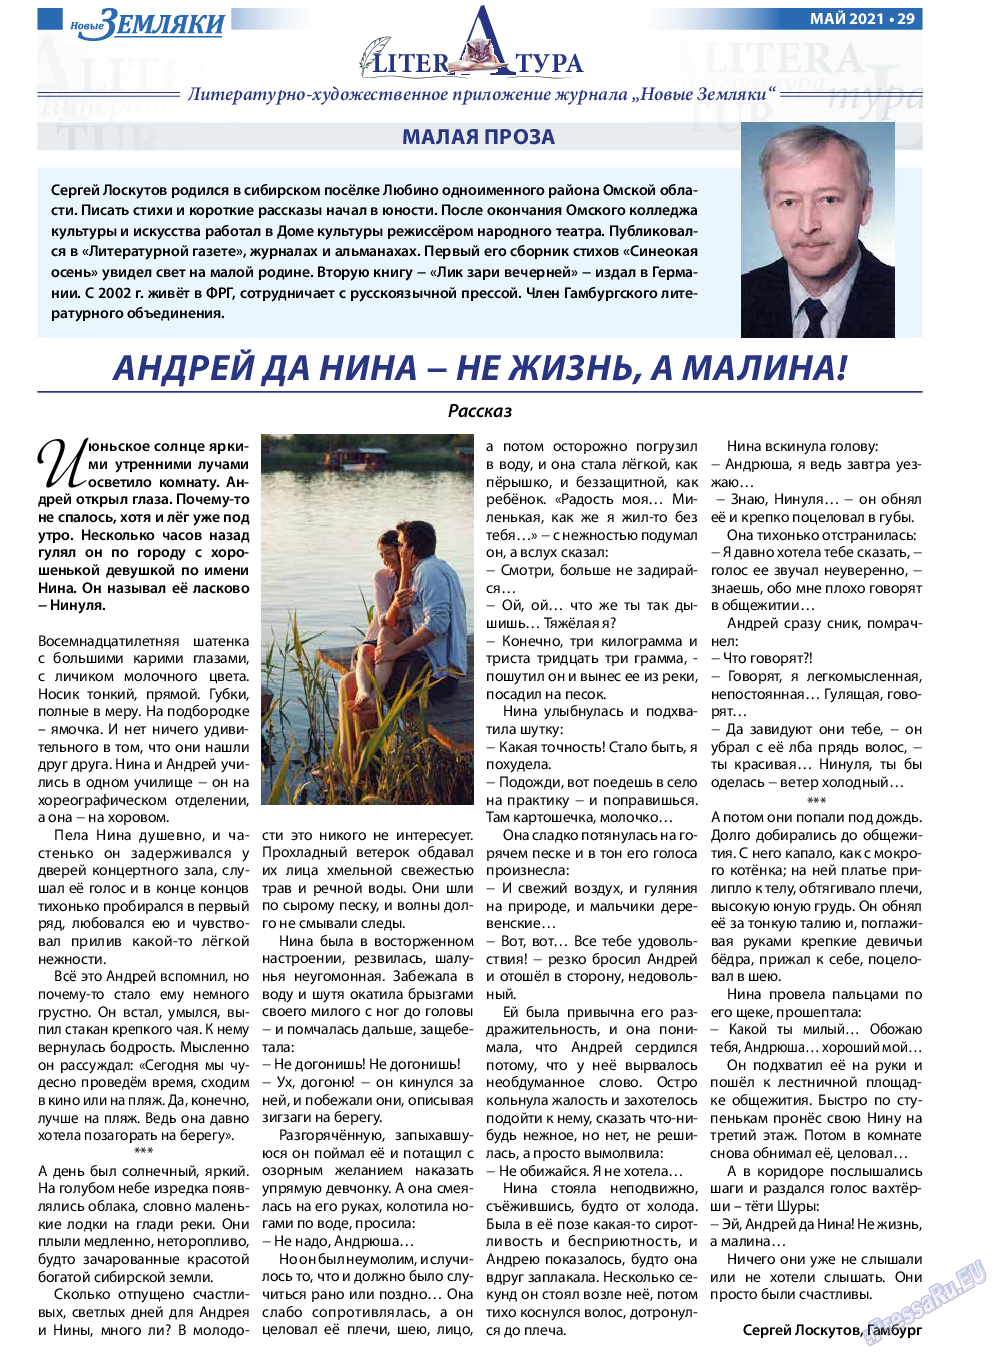 Новые Земляки, газета. 2021 №5 стр.29